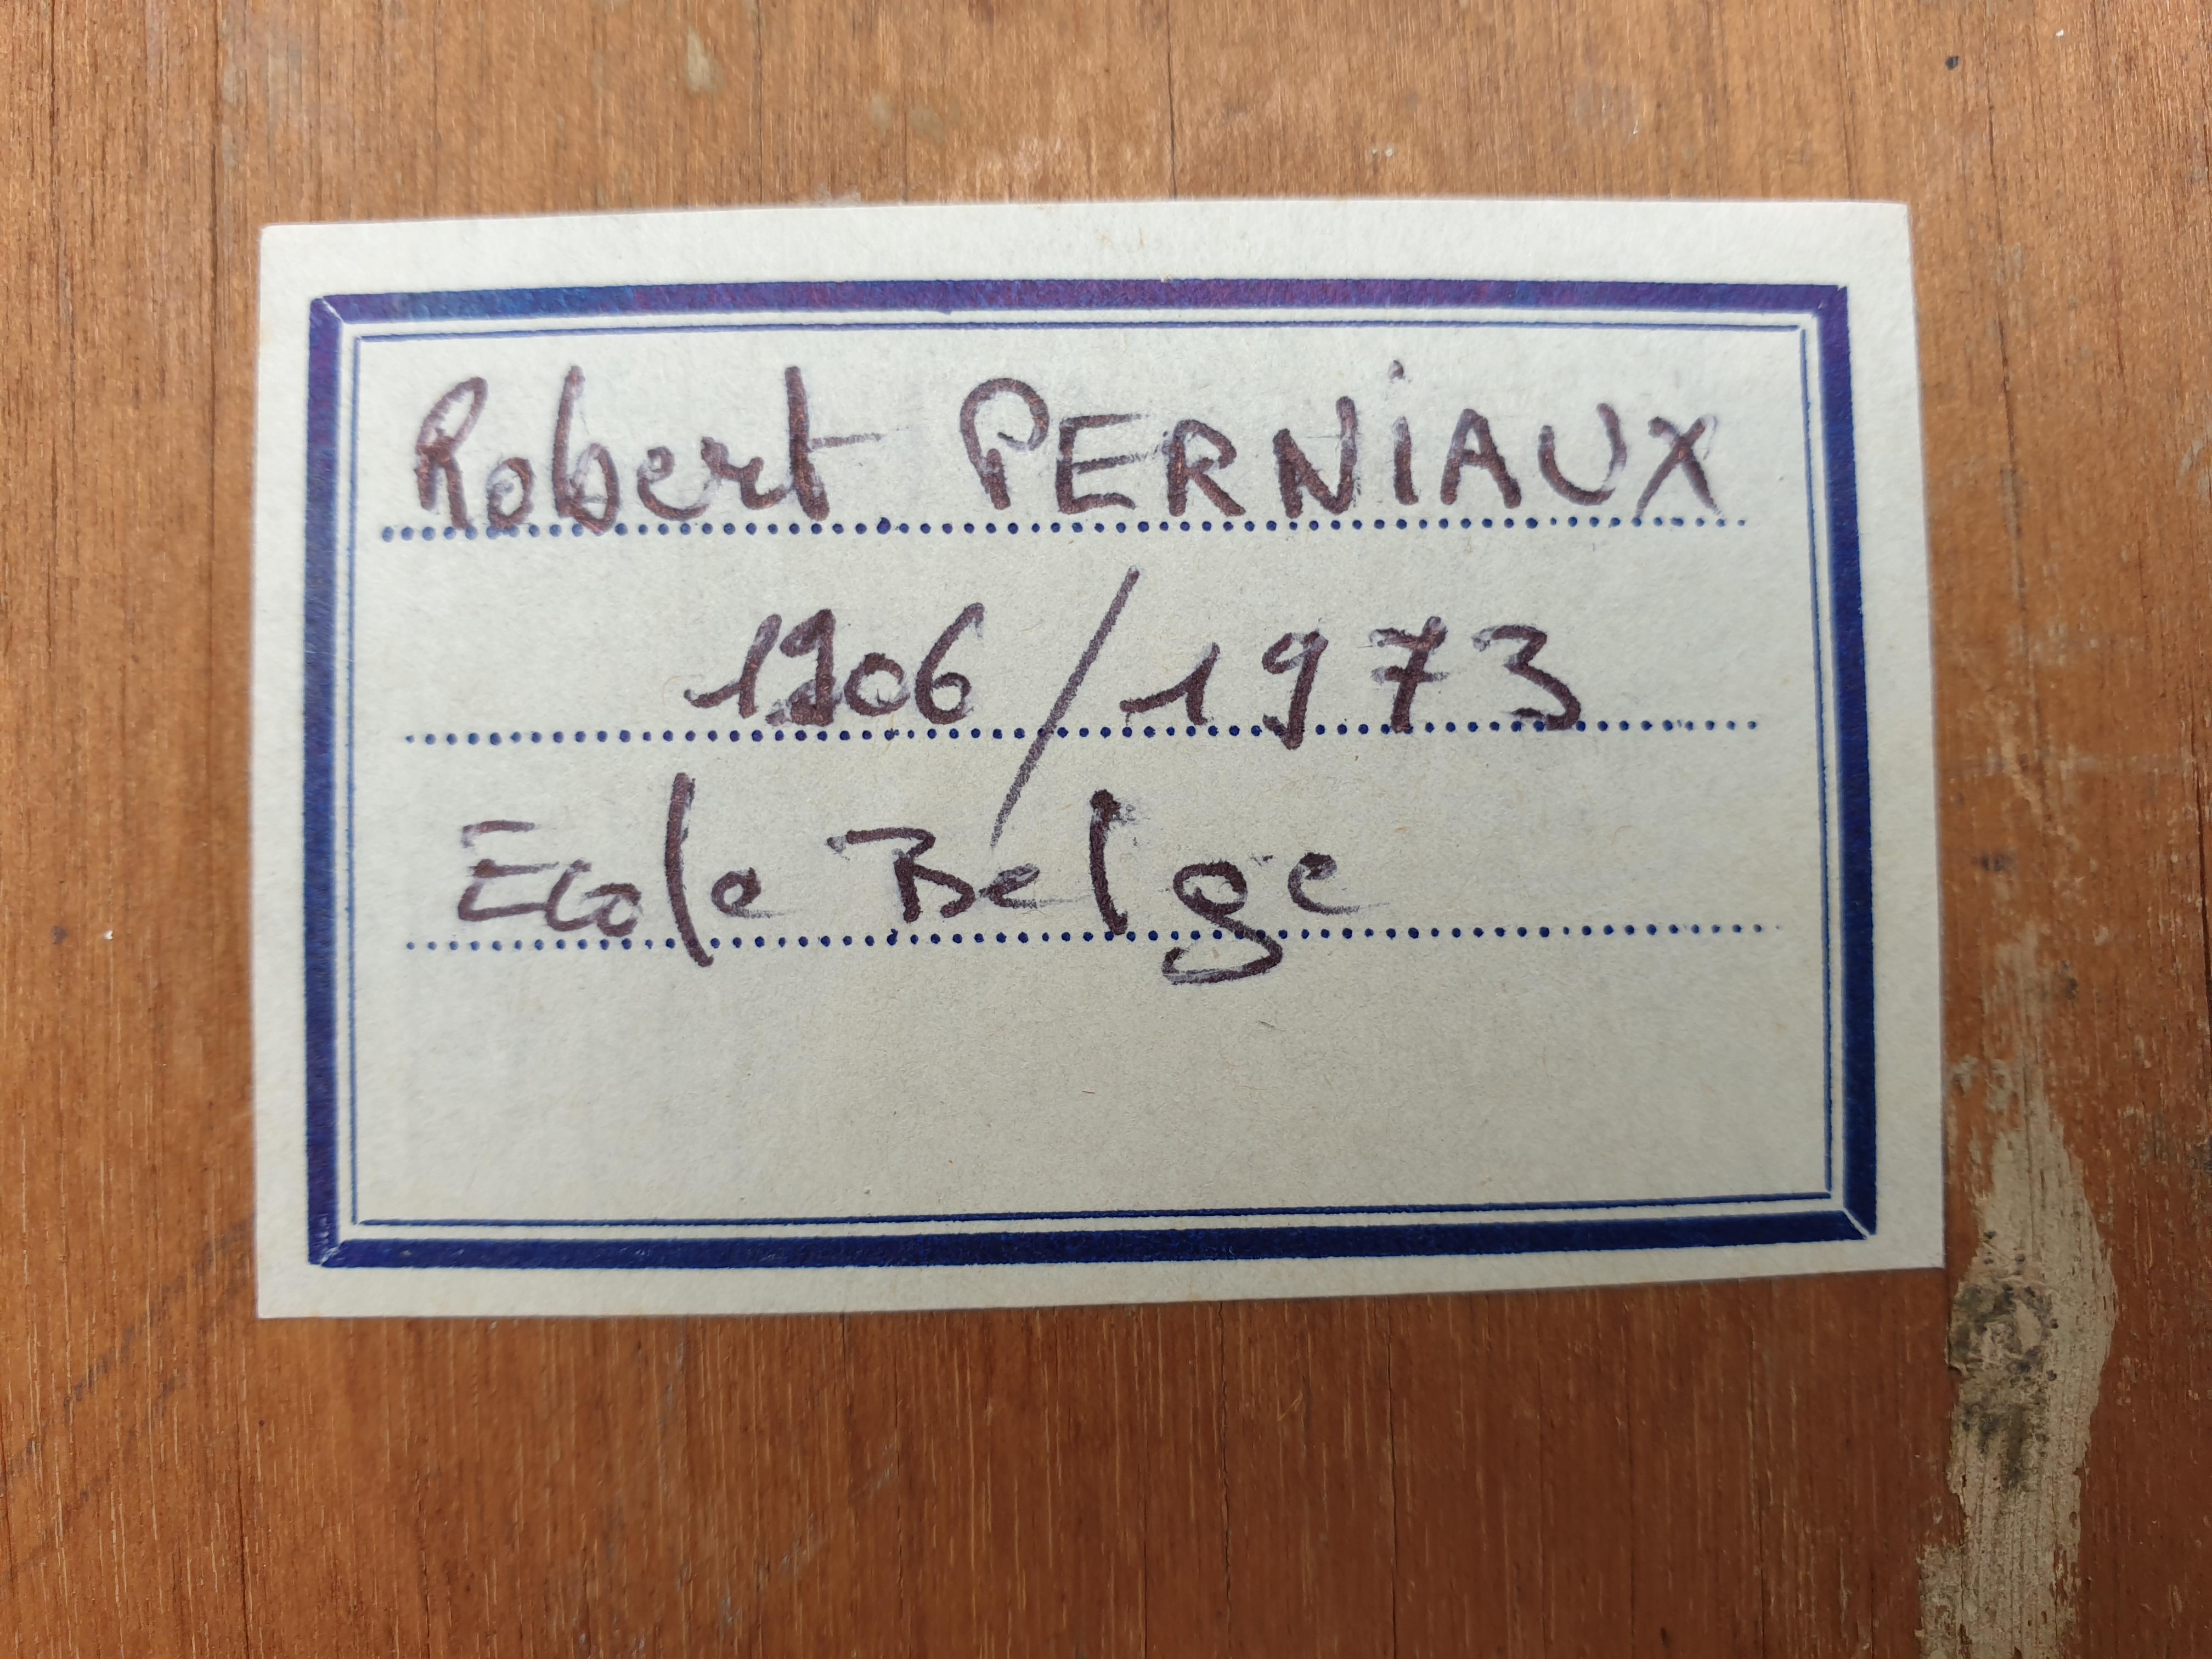 Öl auf Tafel von Robert Perniaux, belgischer Künstler, Mitte des Jahrhunderts, signiert und datiert 1952 unten rechts.

Robert Perniaux, geboren 1906 in Grez-Doiceau und gestorben 1973, war ein belgischer Architekt, Maler, Keramiker und Illustrator.